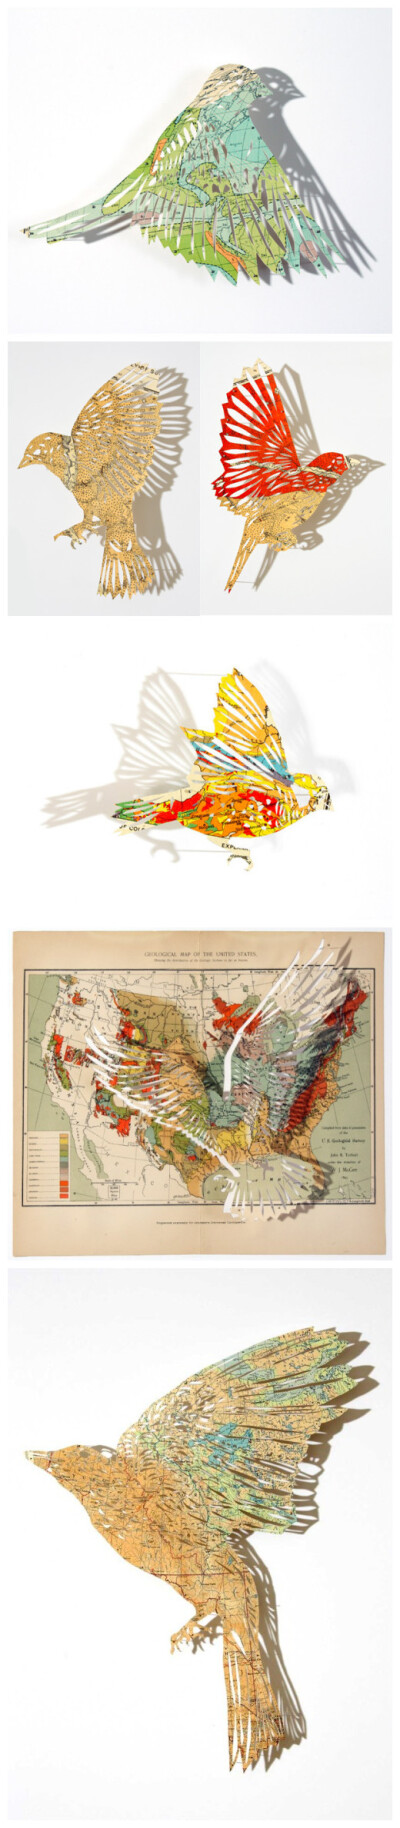 纸艺艺术家Claire Brewster 用旧地图雕刻的鸟。